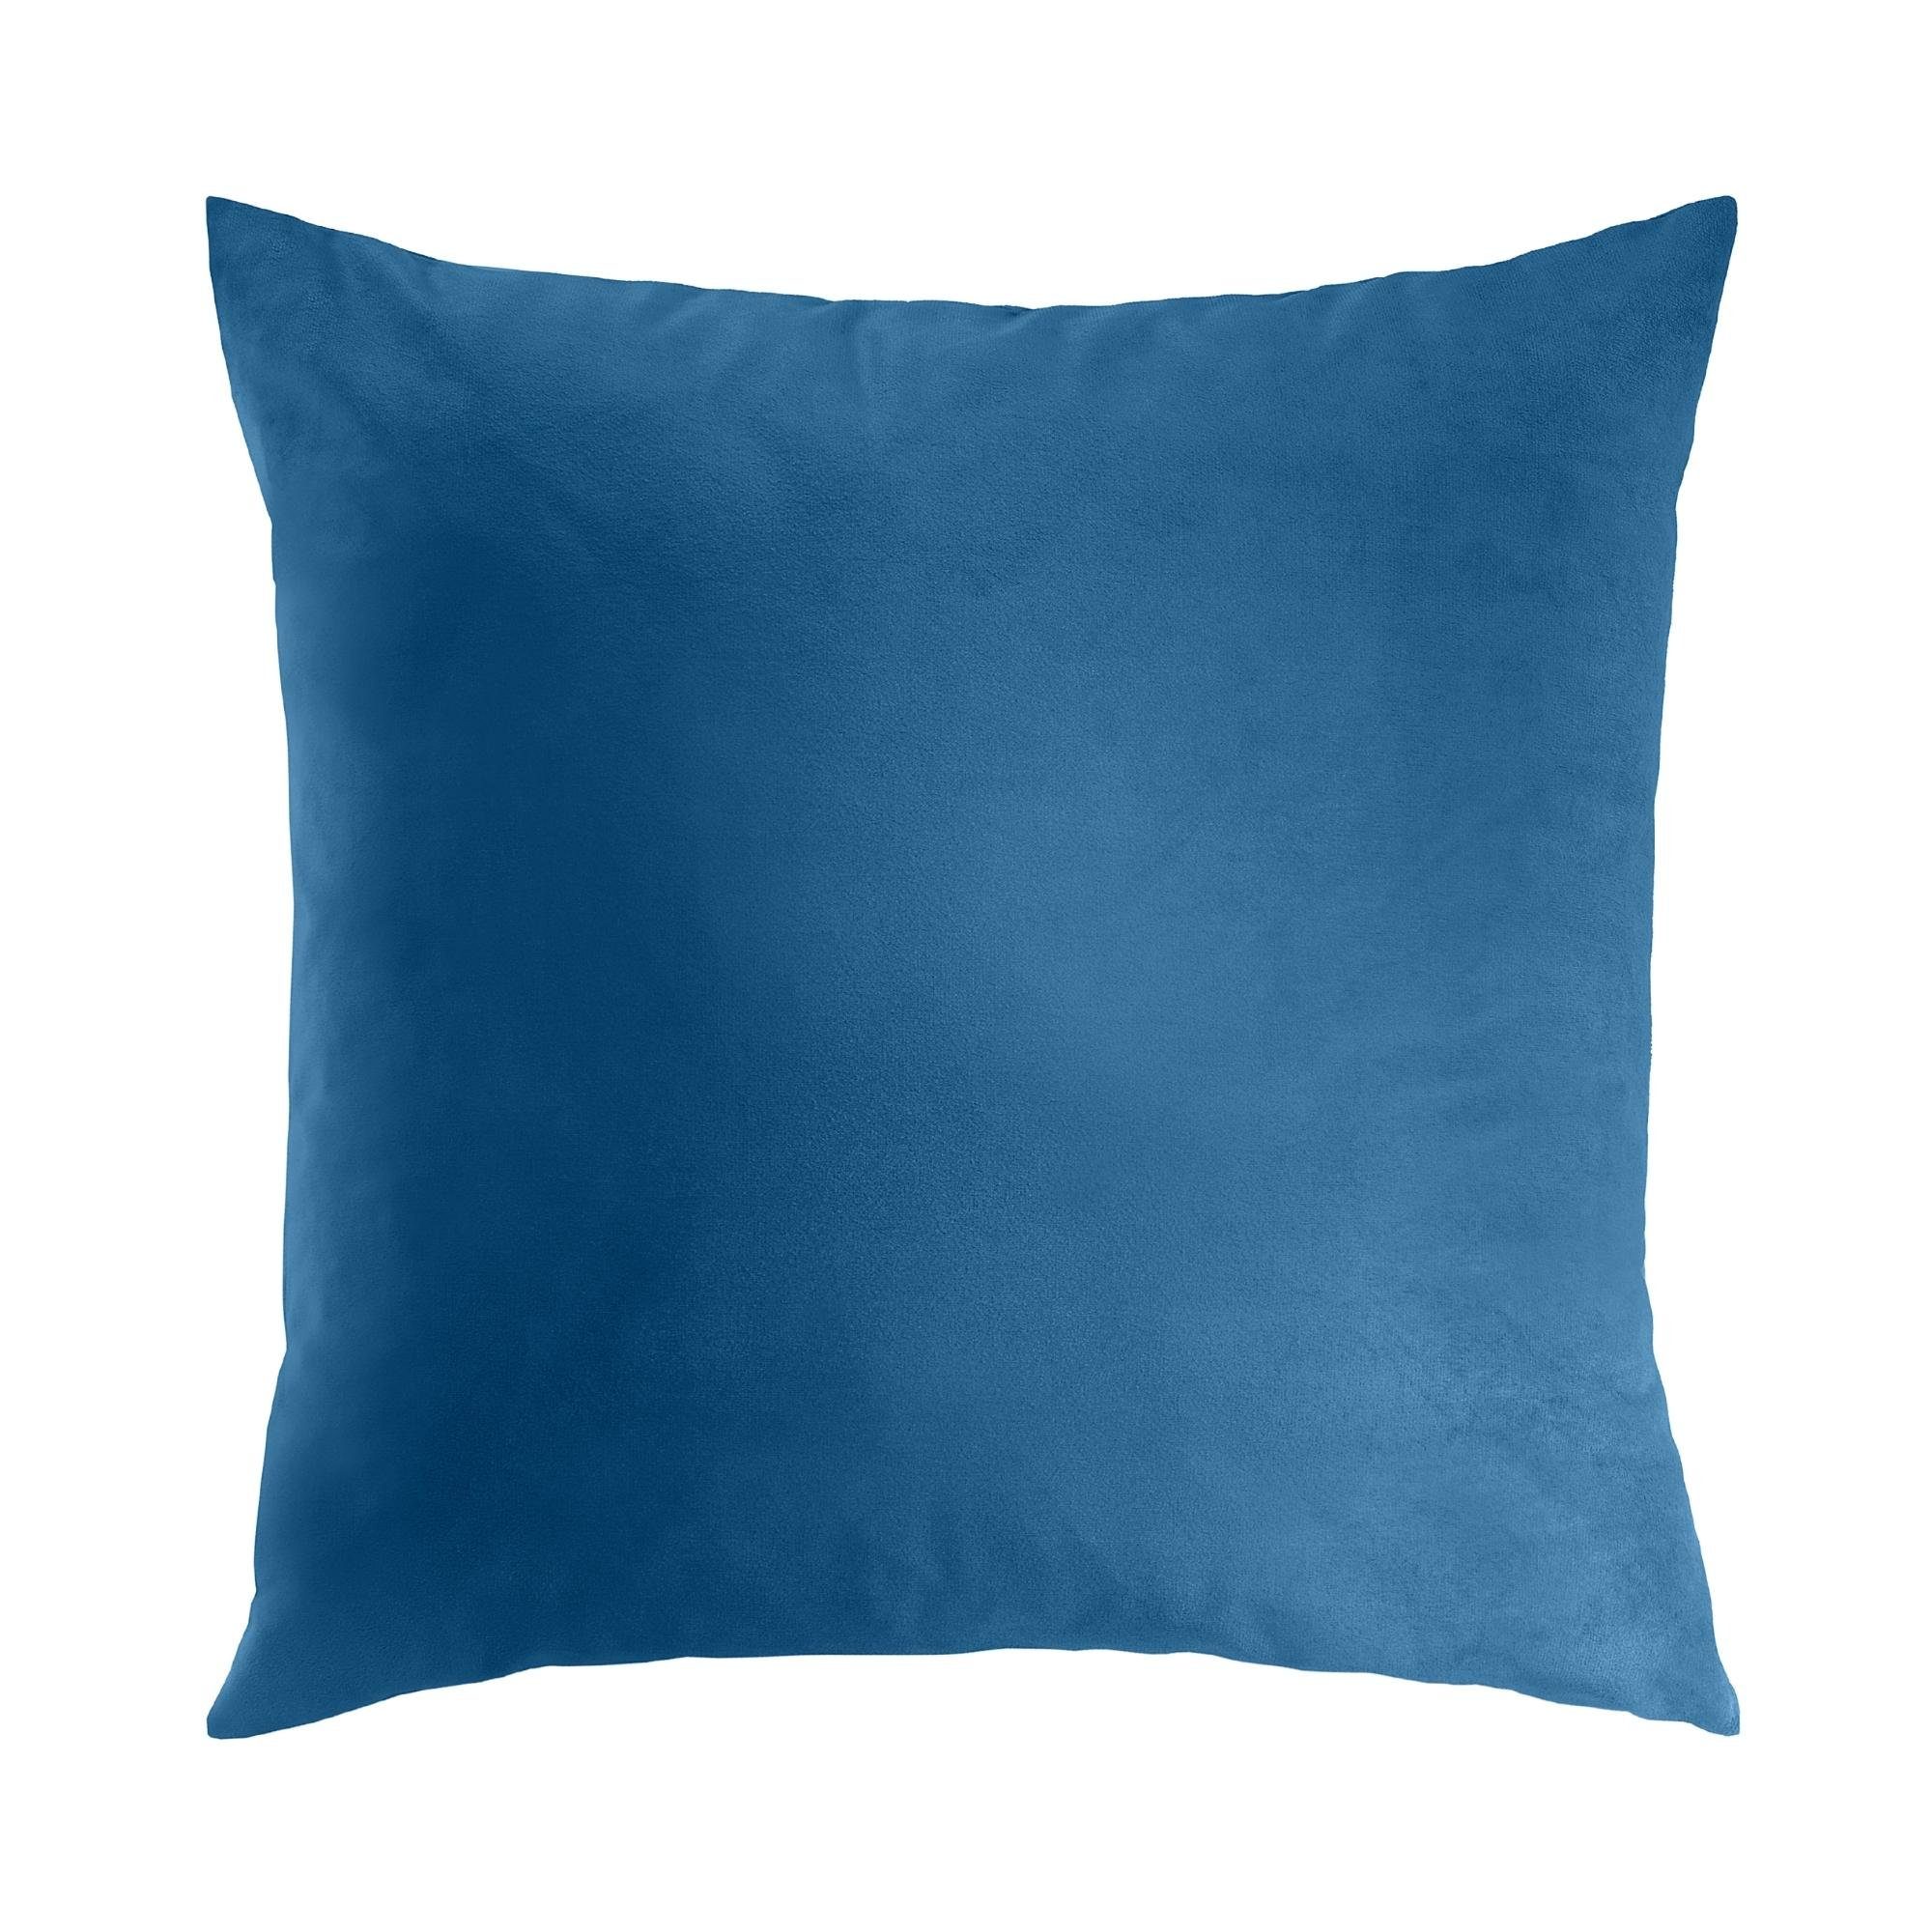 REALLaxx Dekokissen Mantta, Sofakissen, mit Bezug und Füllung, einfarbig, waschbar, 50x50cm Blau/Royalblau